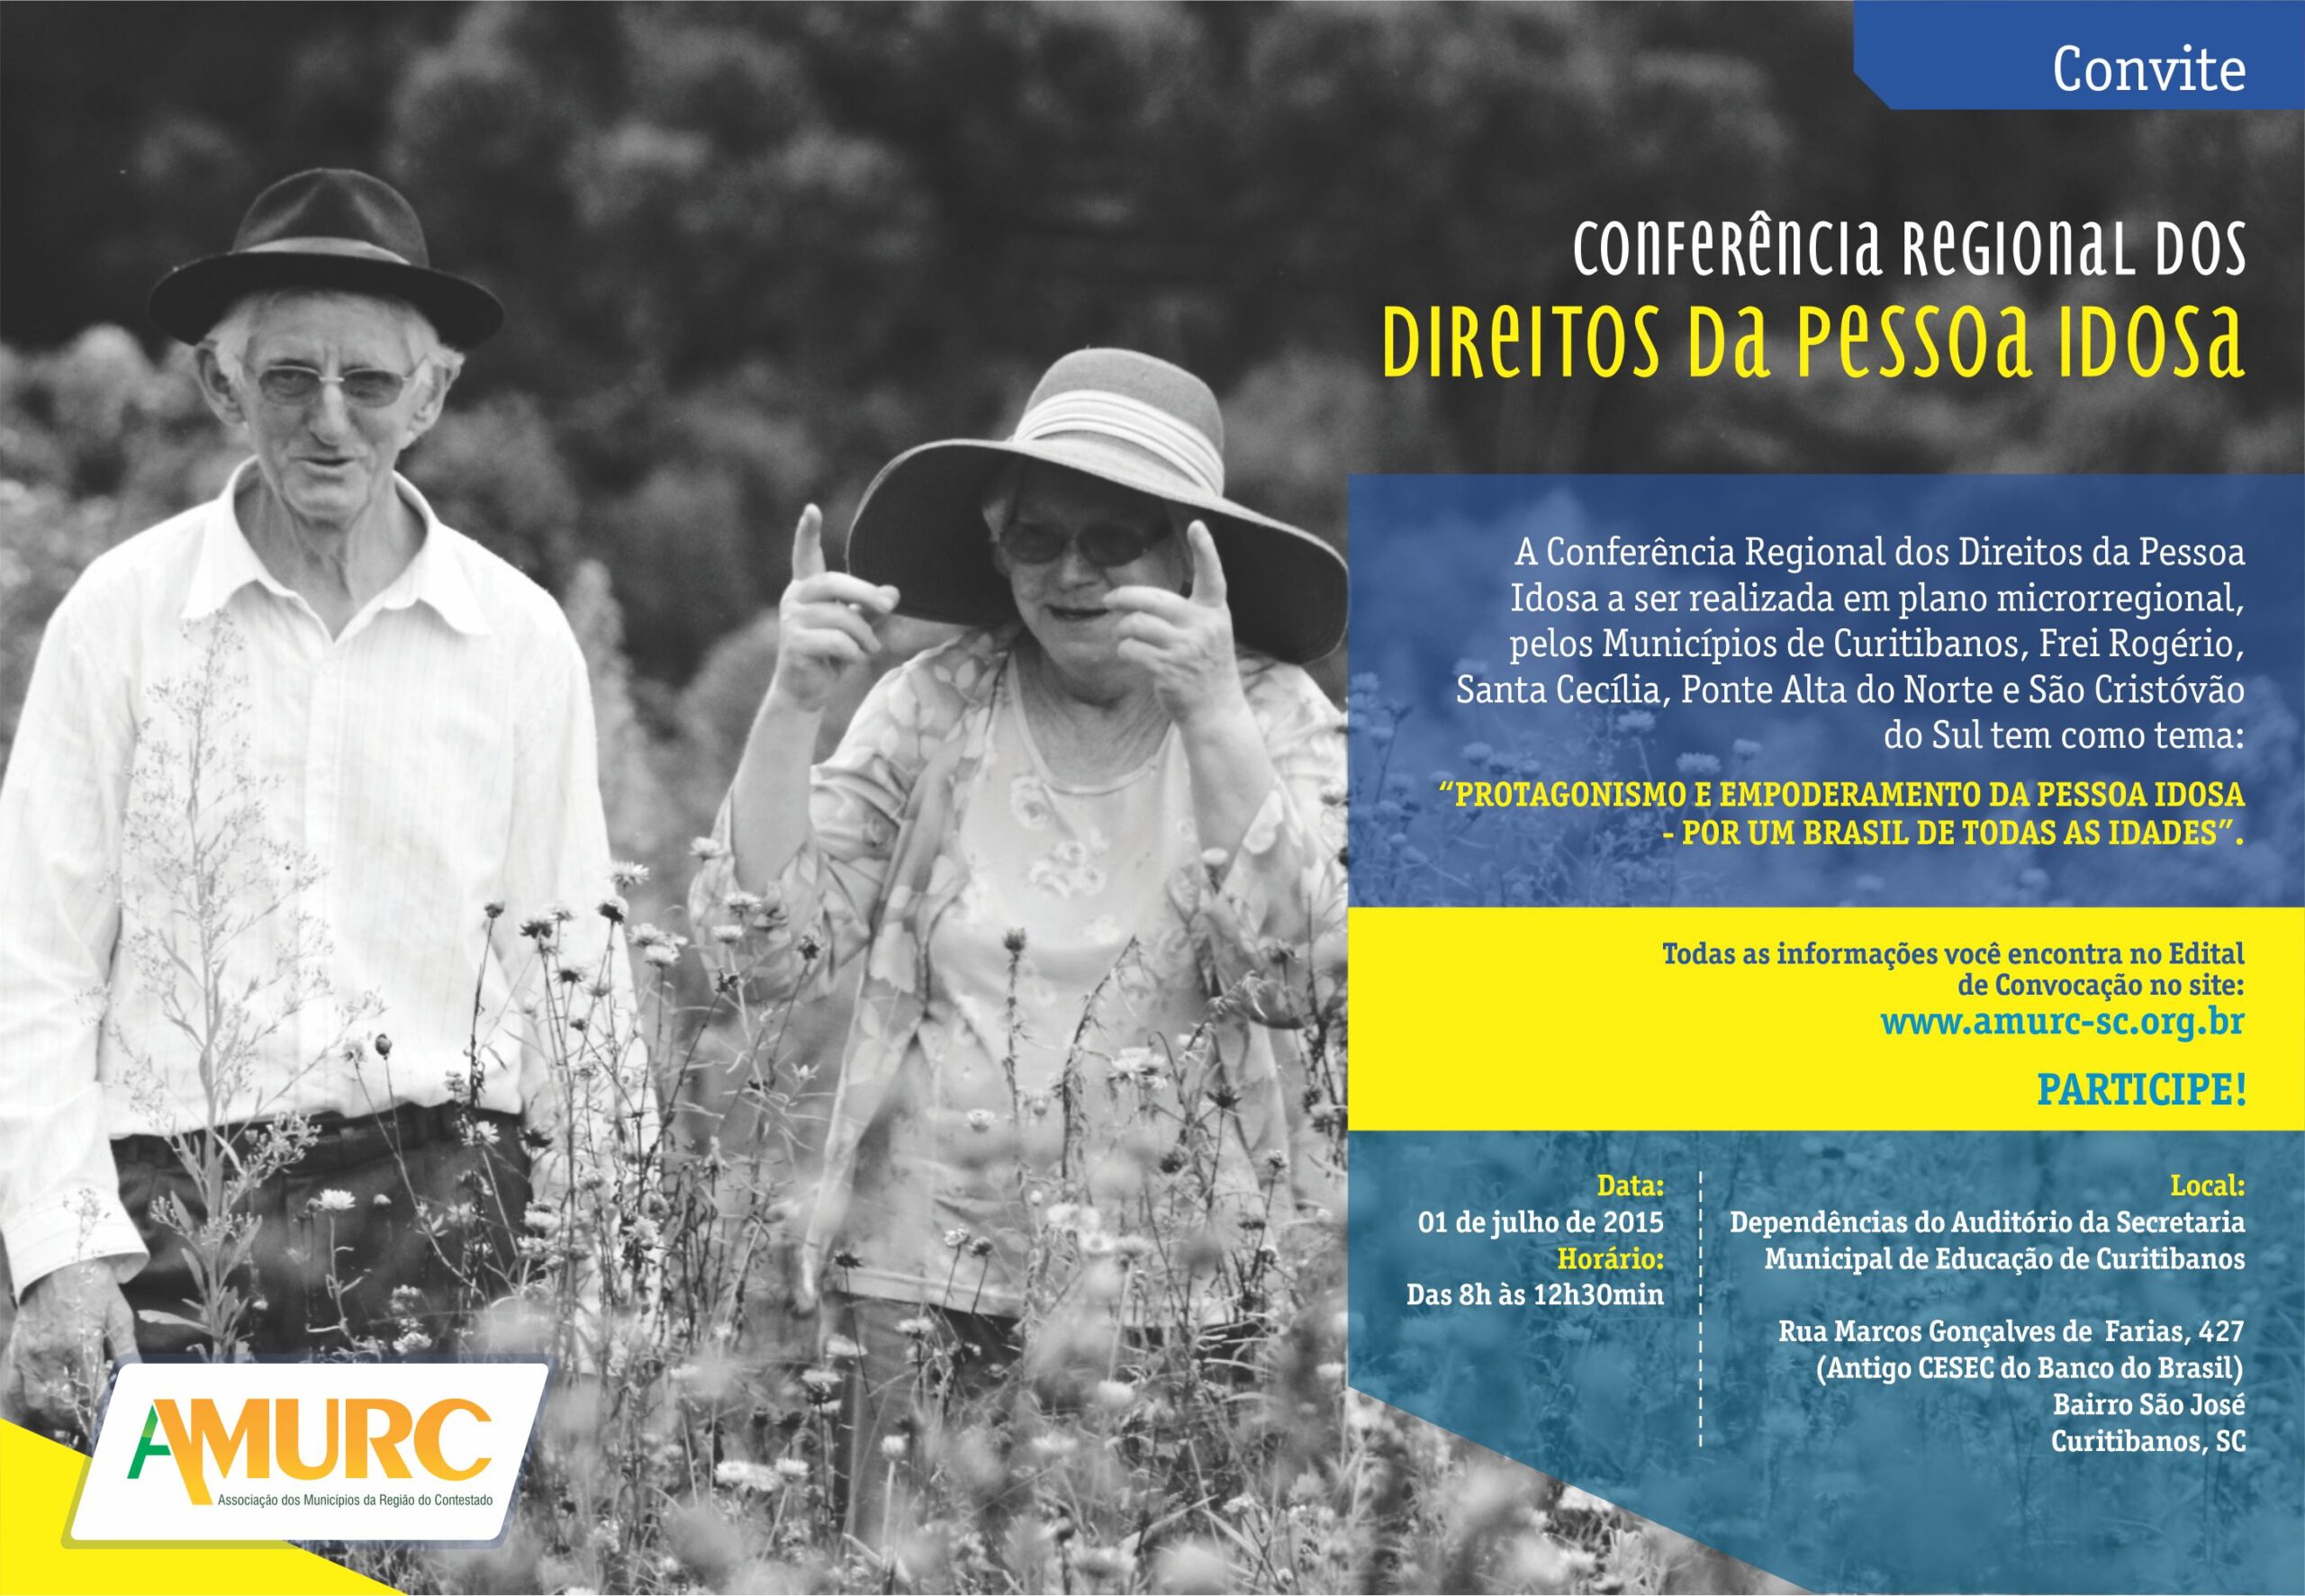 You are currently viewing Conferência Regional dos Direitos da Pessoa Idosa